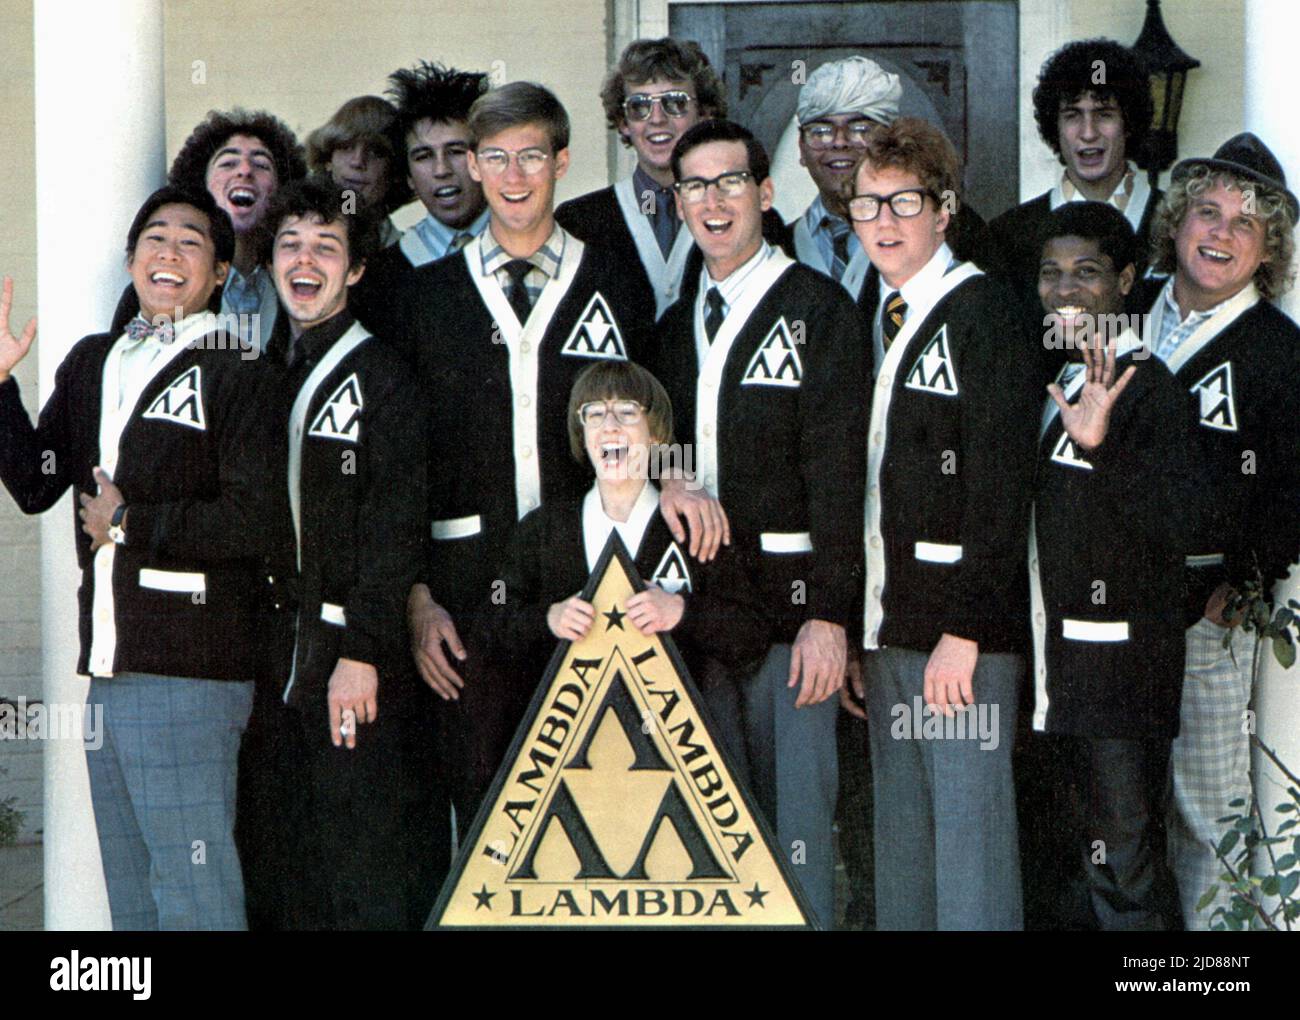 EDWARDS,CARRADINE, REVENGE OF THE NERDS, 1984, Stock Photo